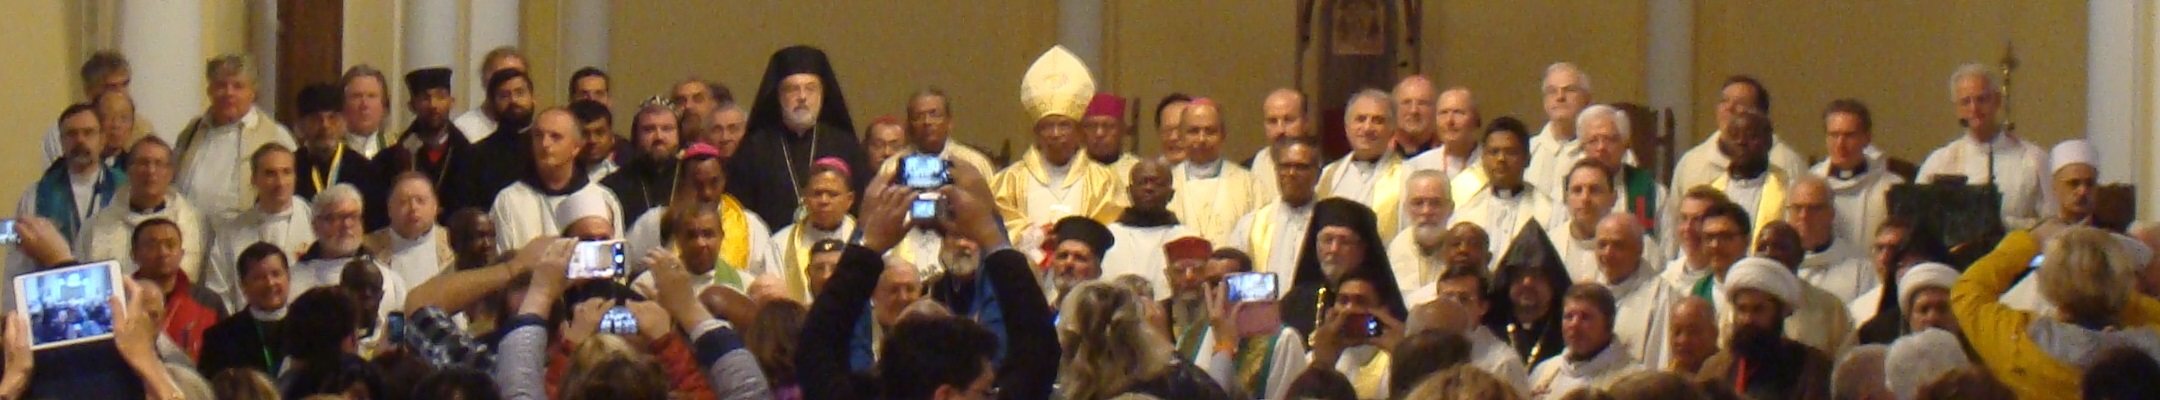 Le clerg aprs la Messe en la Cathédrale catholique de l'Immaculée Conception, à Moscou